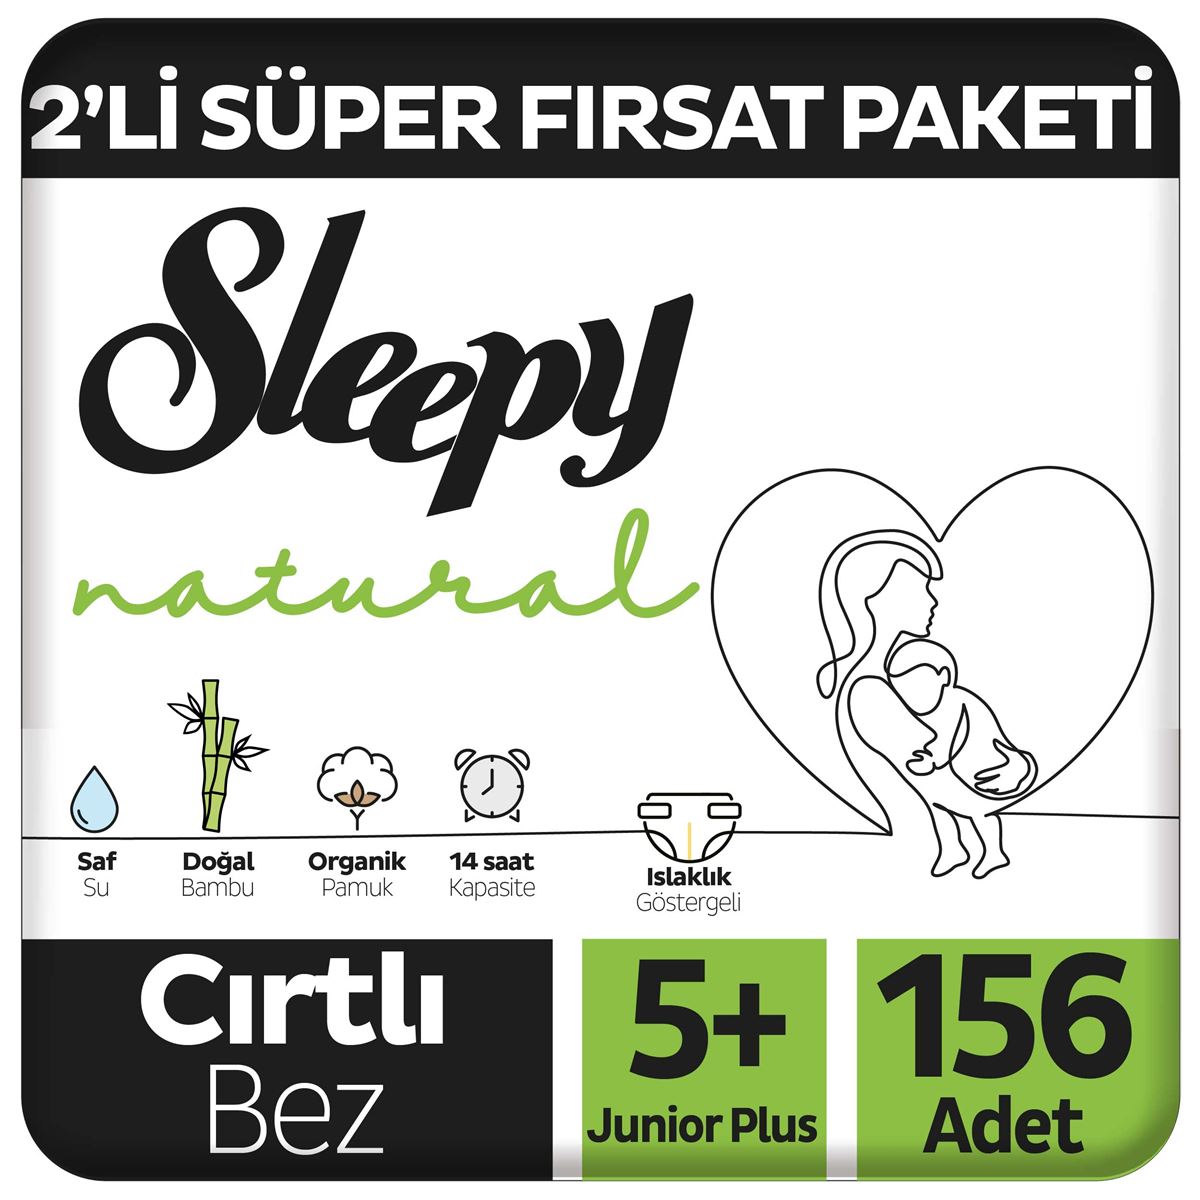 Sleepy Natural 2'li Süper Fırsat Paketi Bebek Bezi 5+ Numara Junior Plus 156 Adet